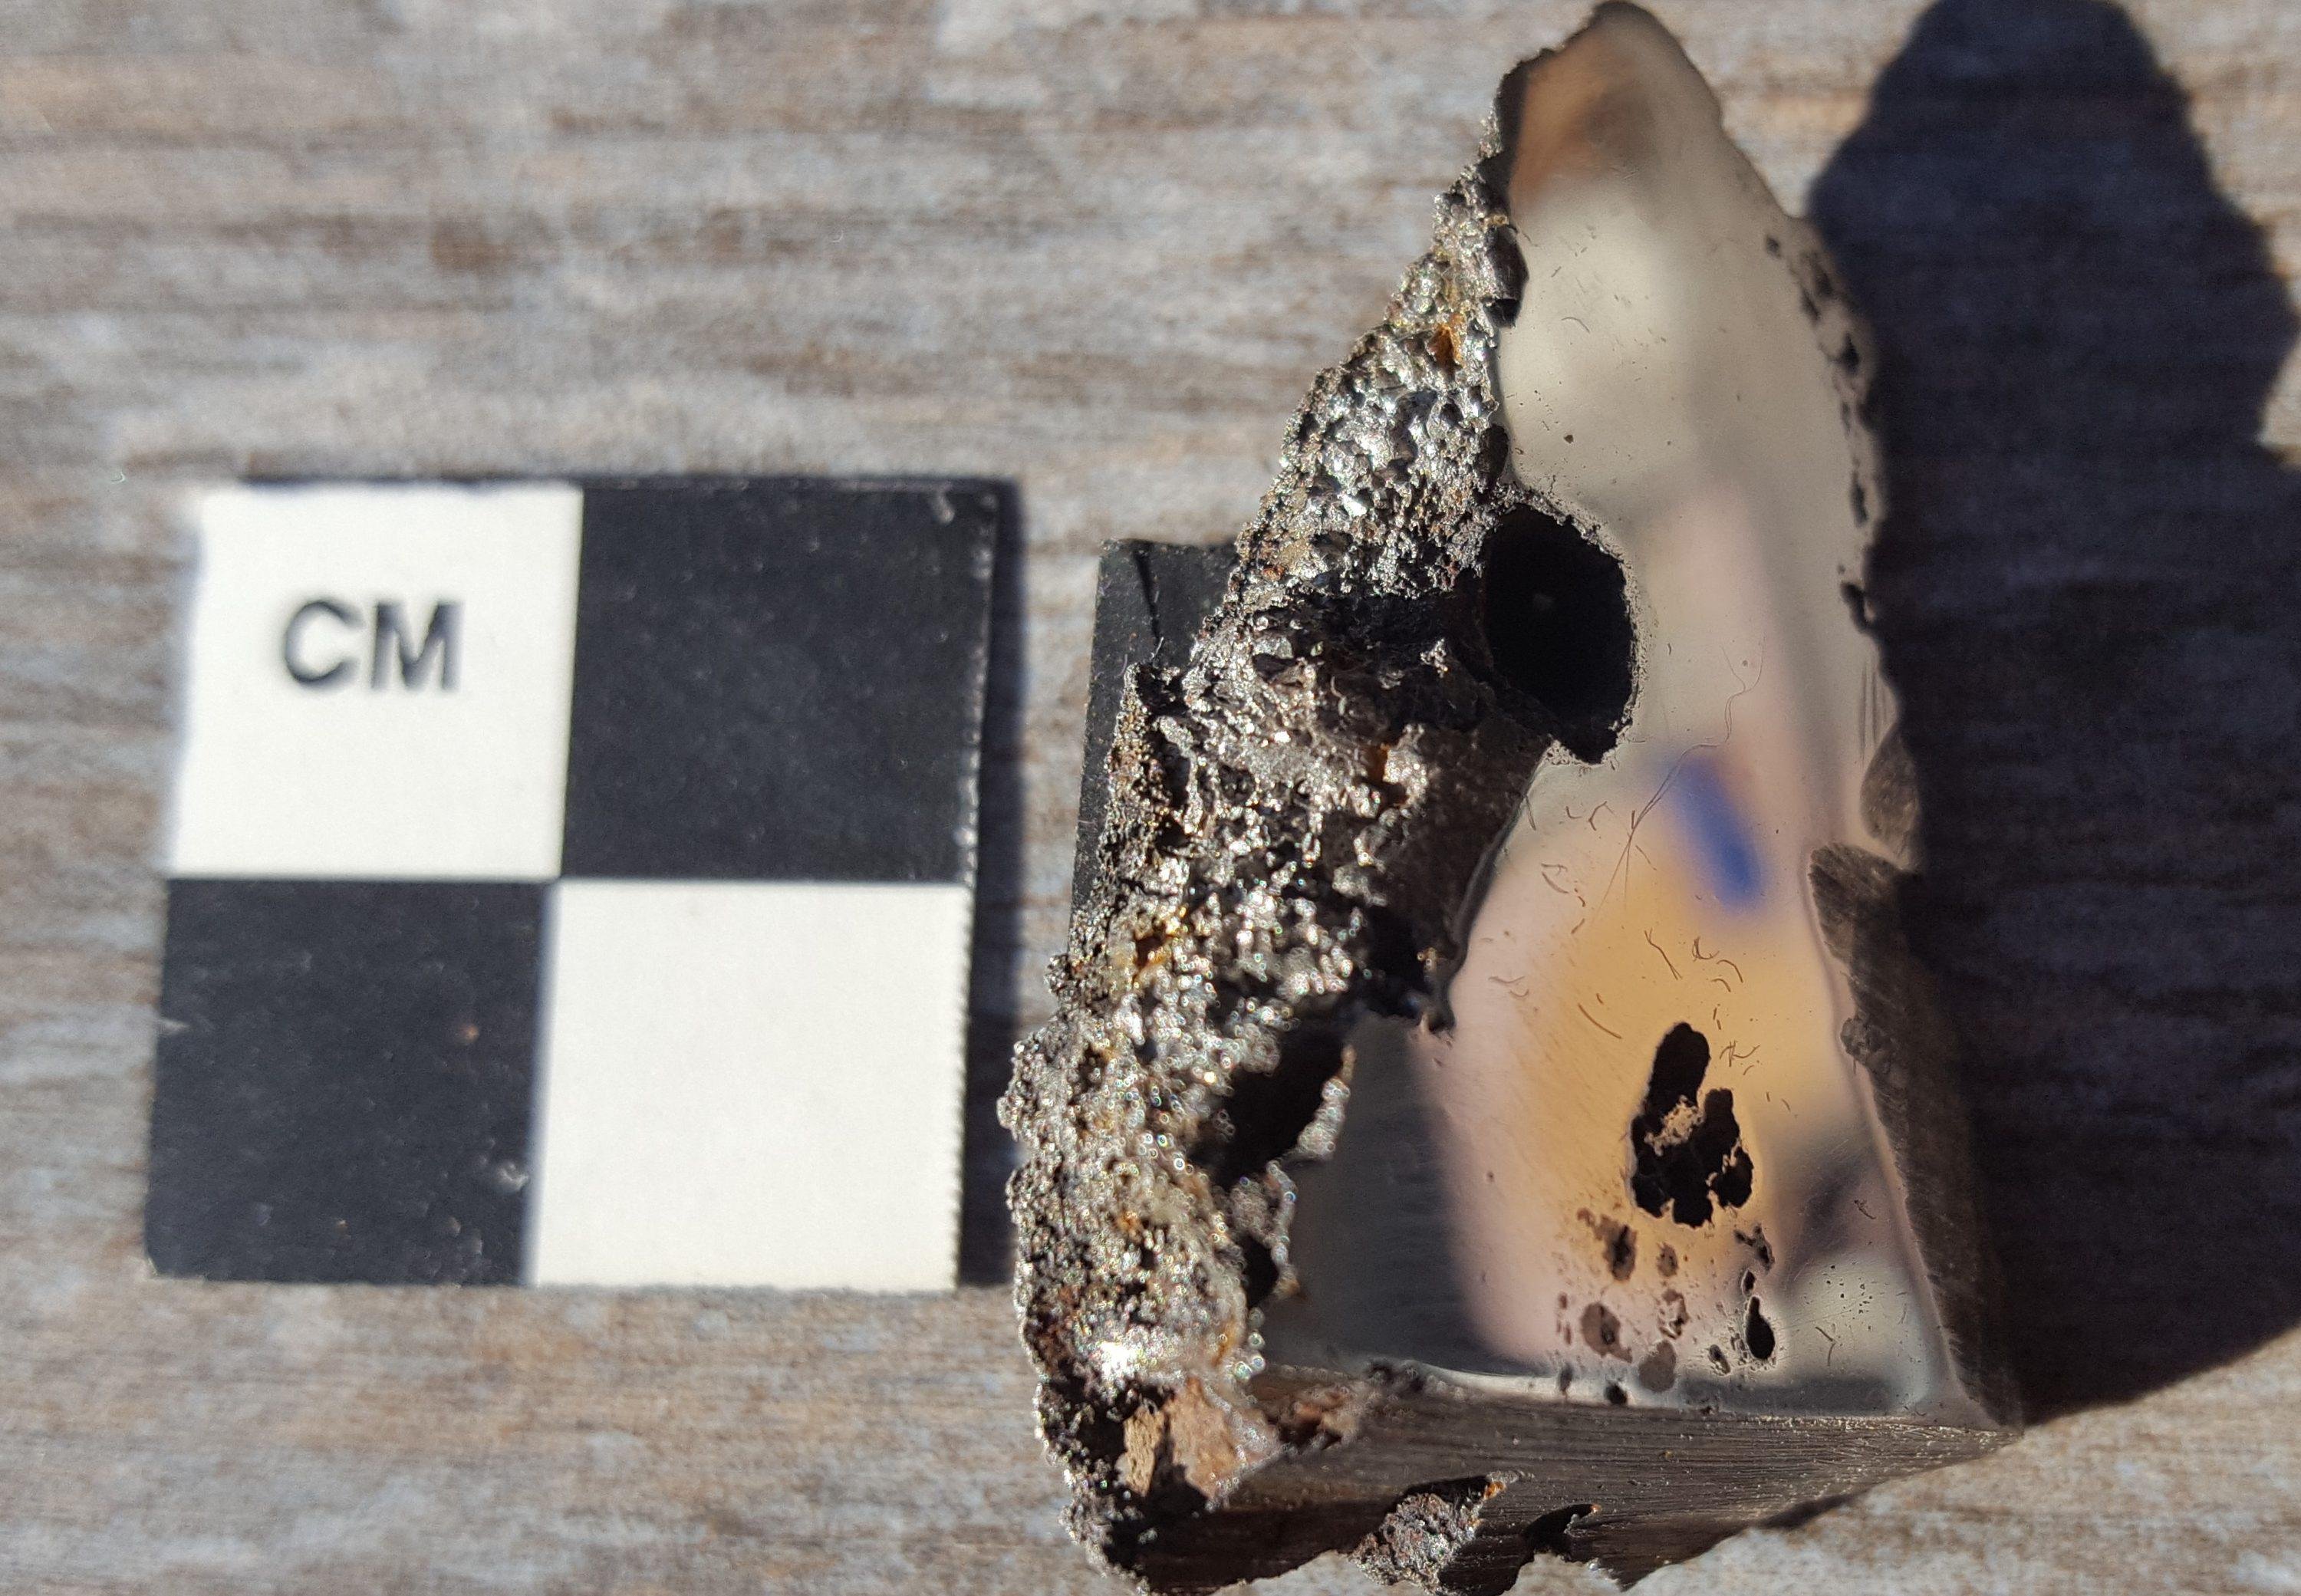 Os especialistas não imaginavam que um pedacinho de 70g de meteorito pudessem trazer tantas novidades.